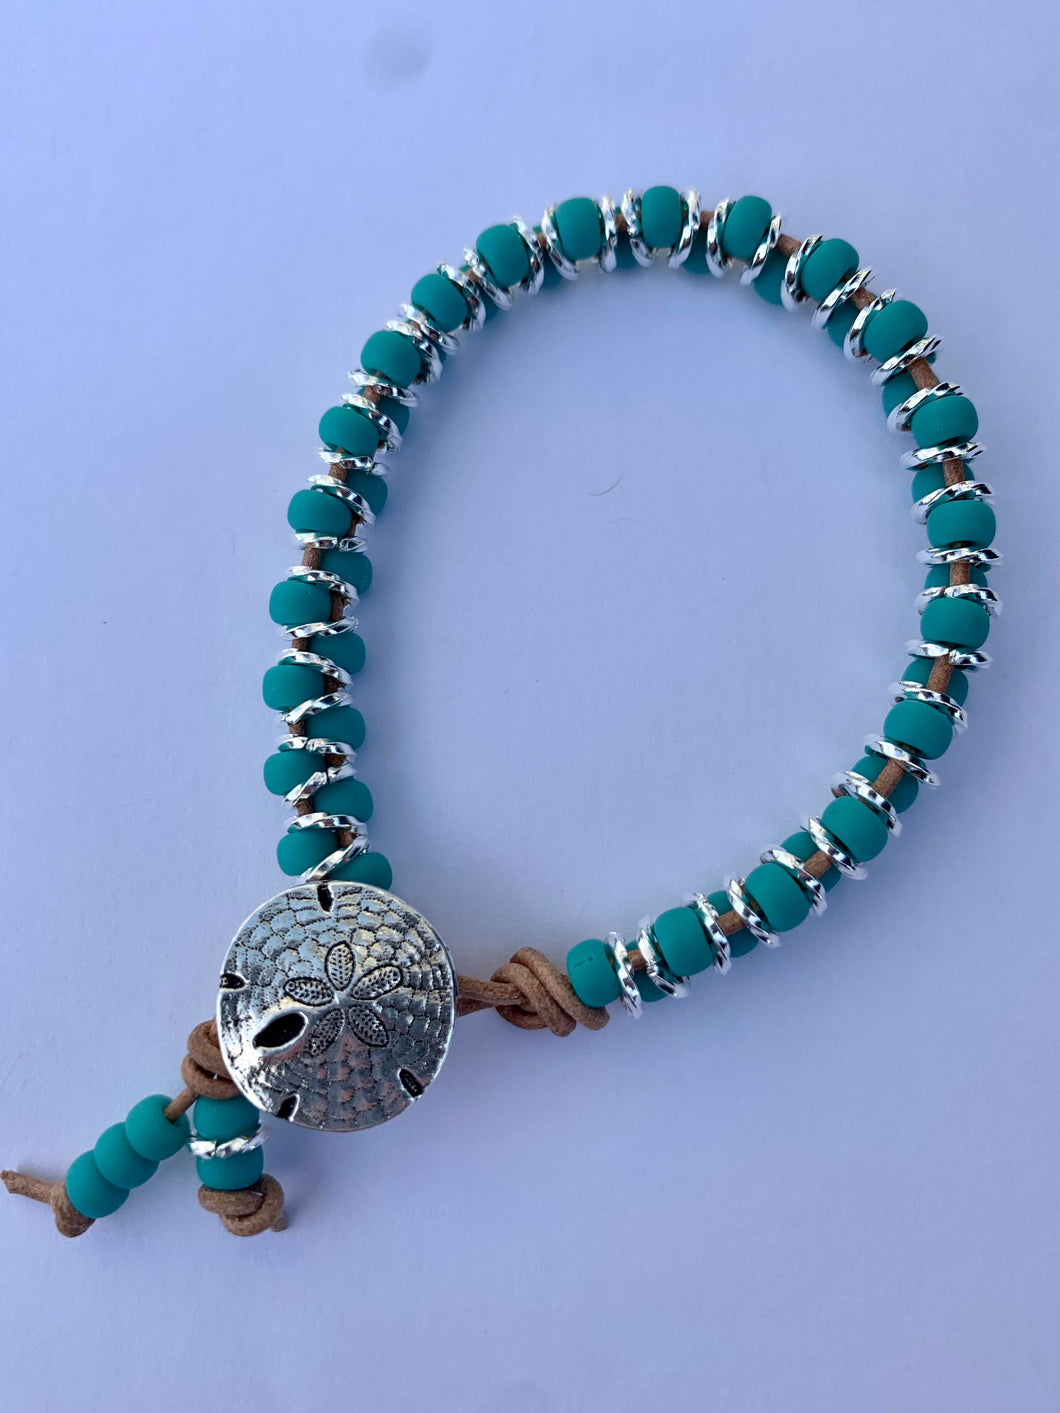 Beads & Rings Bracelet Kits